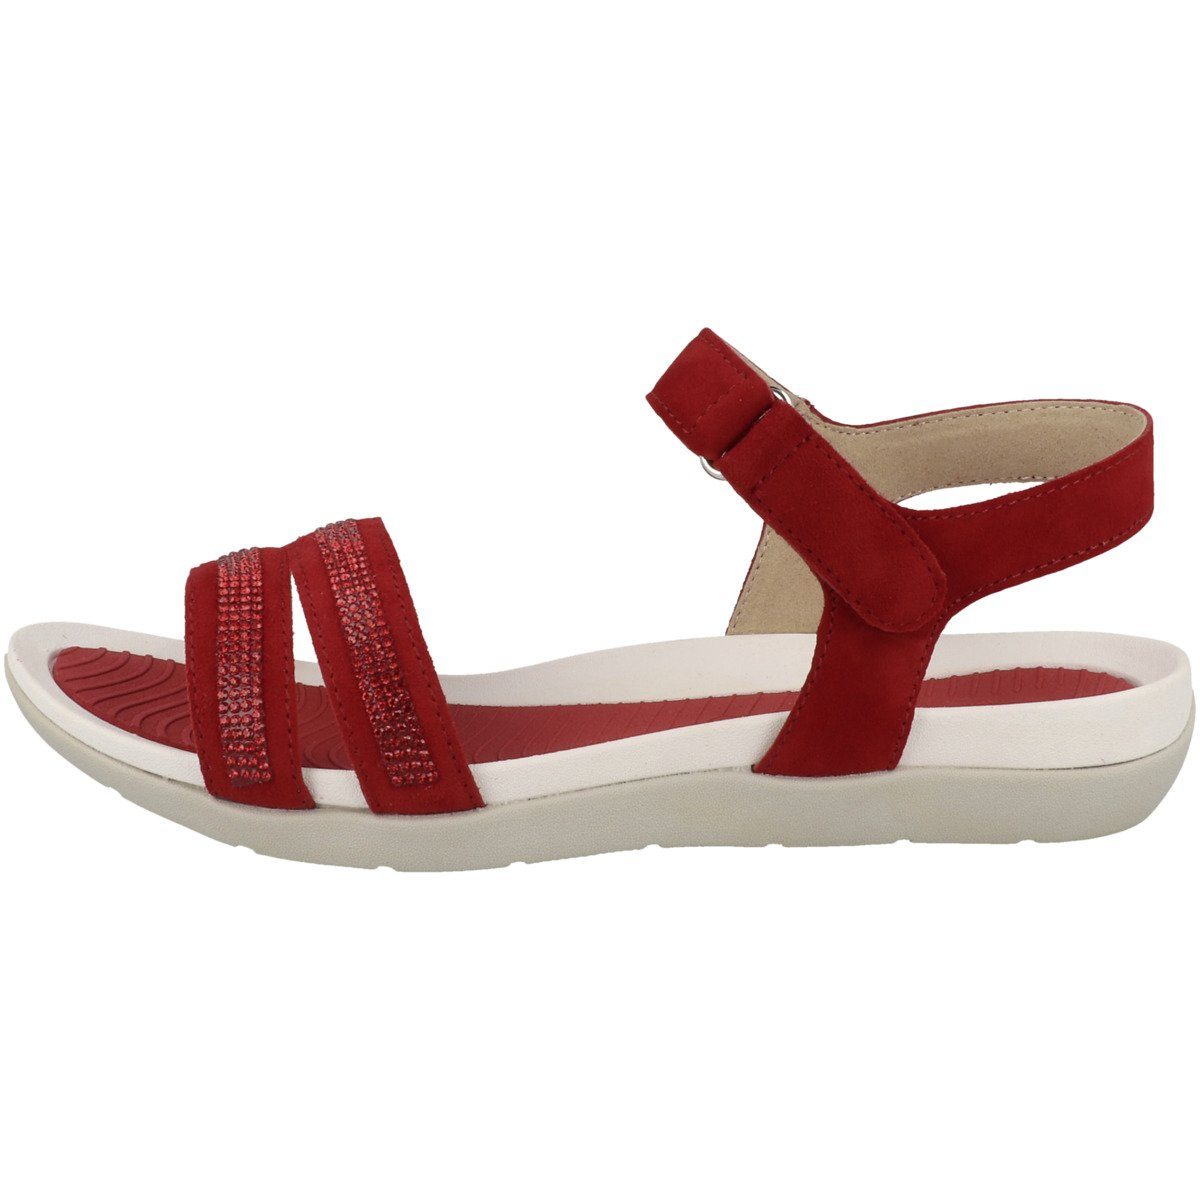 Ara »12-35922 Damen« Sandale online kaufen | OTTO